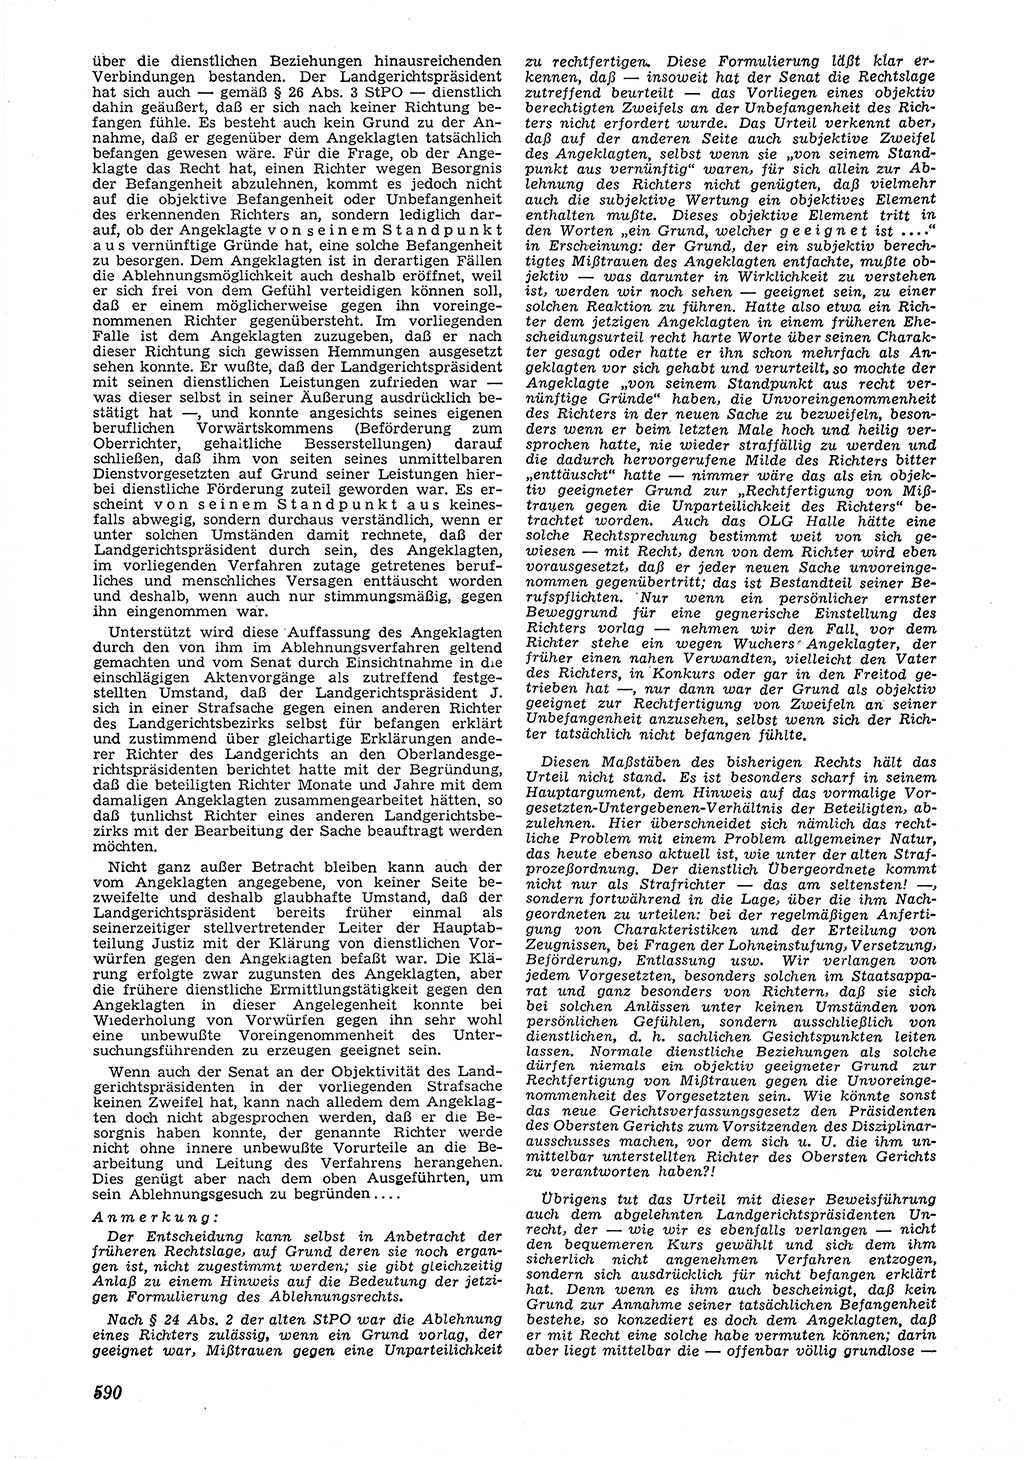 Neue Justiz (NJ), Zeitschrift für Recht und Rechtswissenschaft [Deutsche Demokratische Republik (DDR)], 6. Jahrgang 1952, Seite 590 (NJ DDR 1952, S. 590)